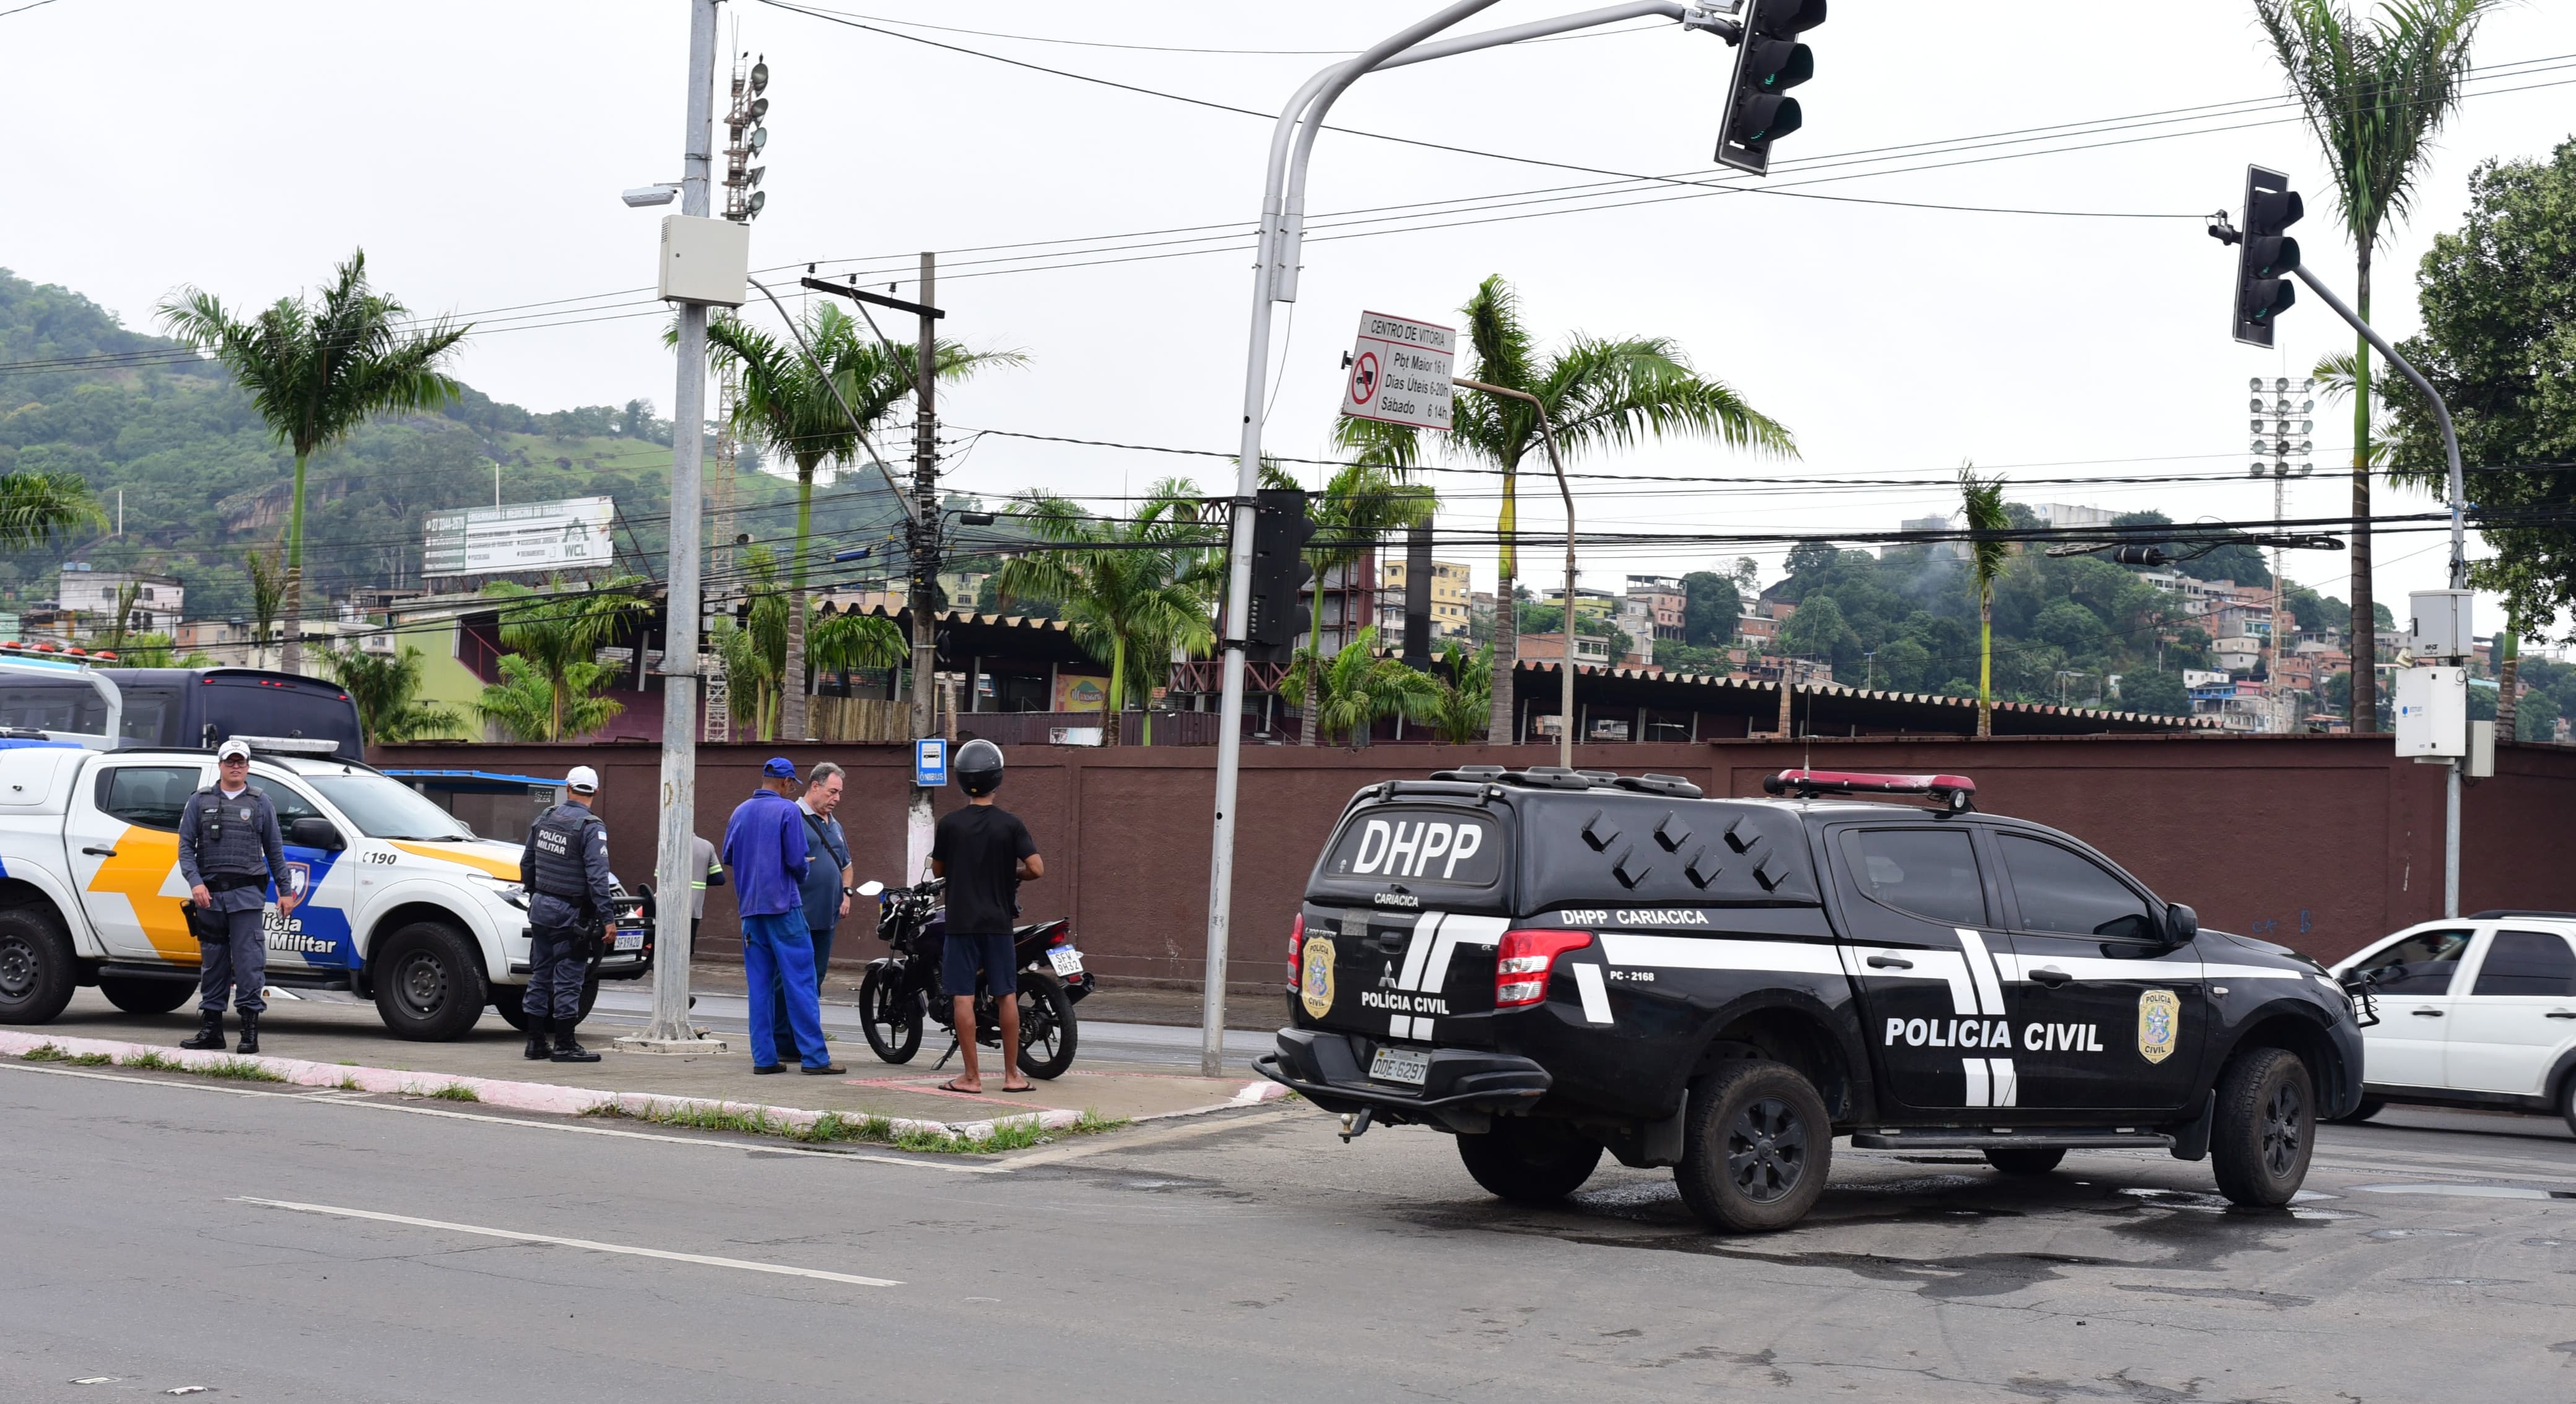 Colisão ocorreu na Avenida Mário Gurgel, em Jardim América, Cariacica, na manhã desta sexta-feira (27), e deixou o condutor ferido